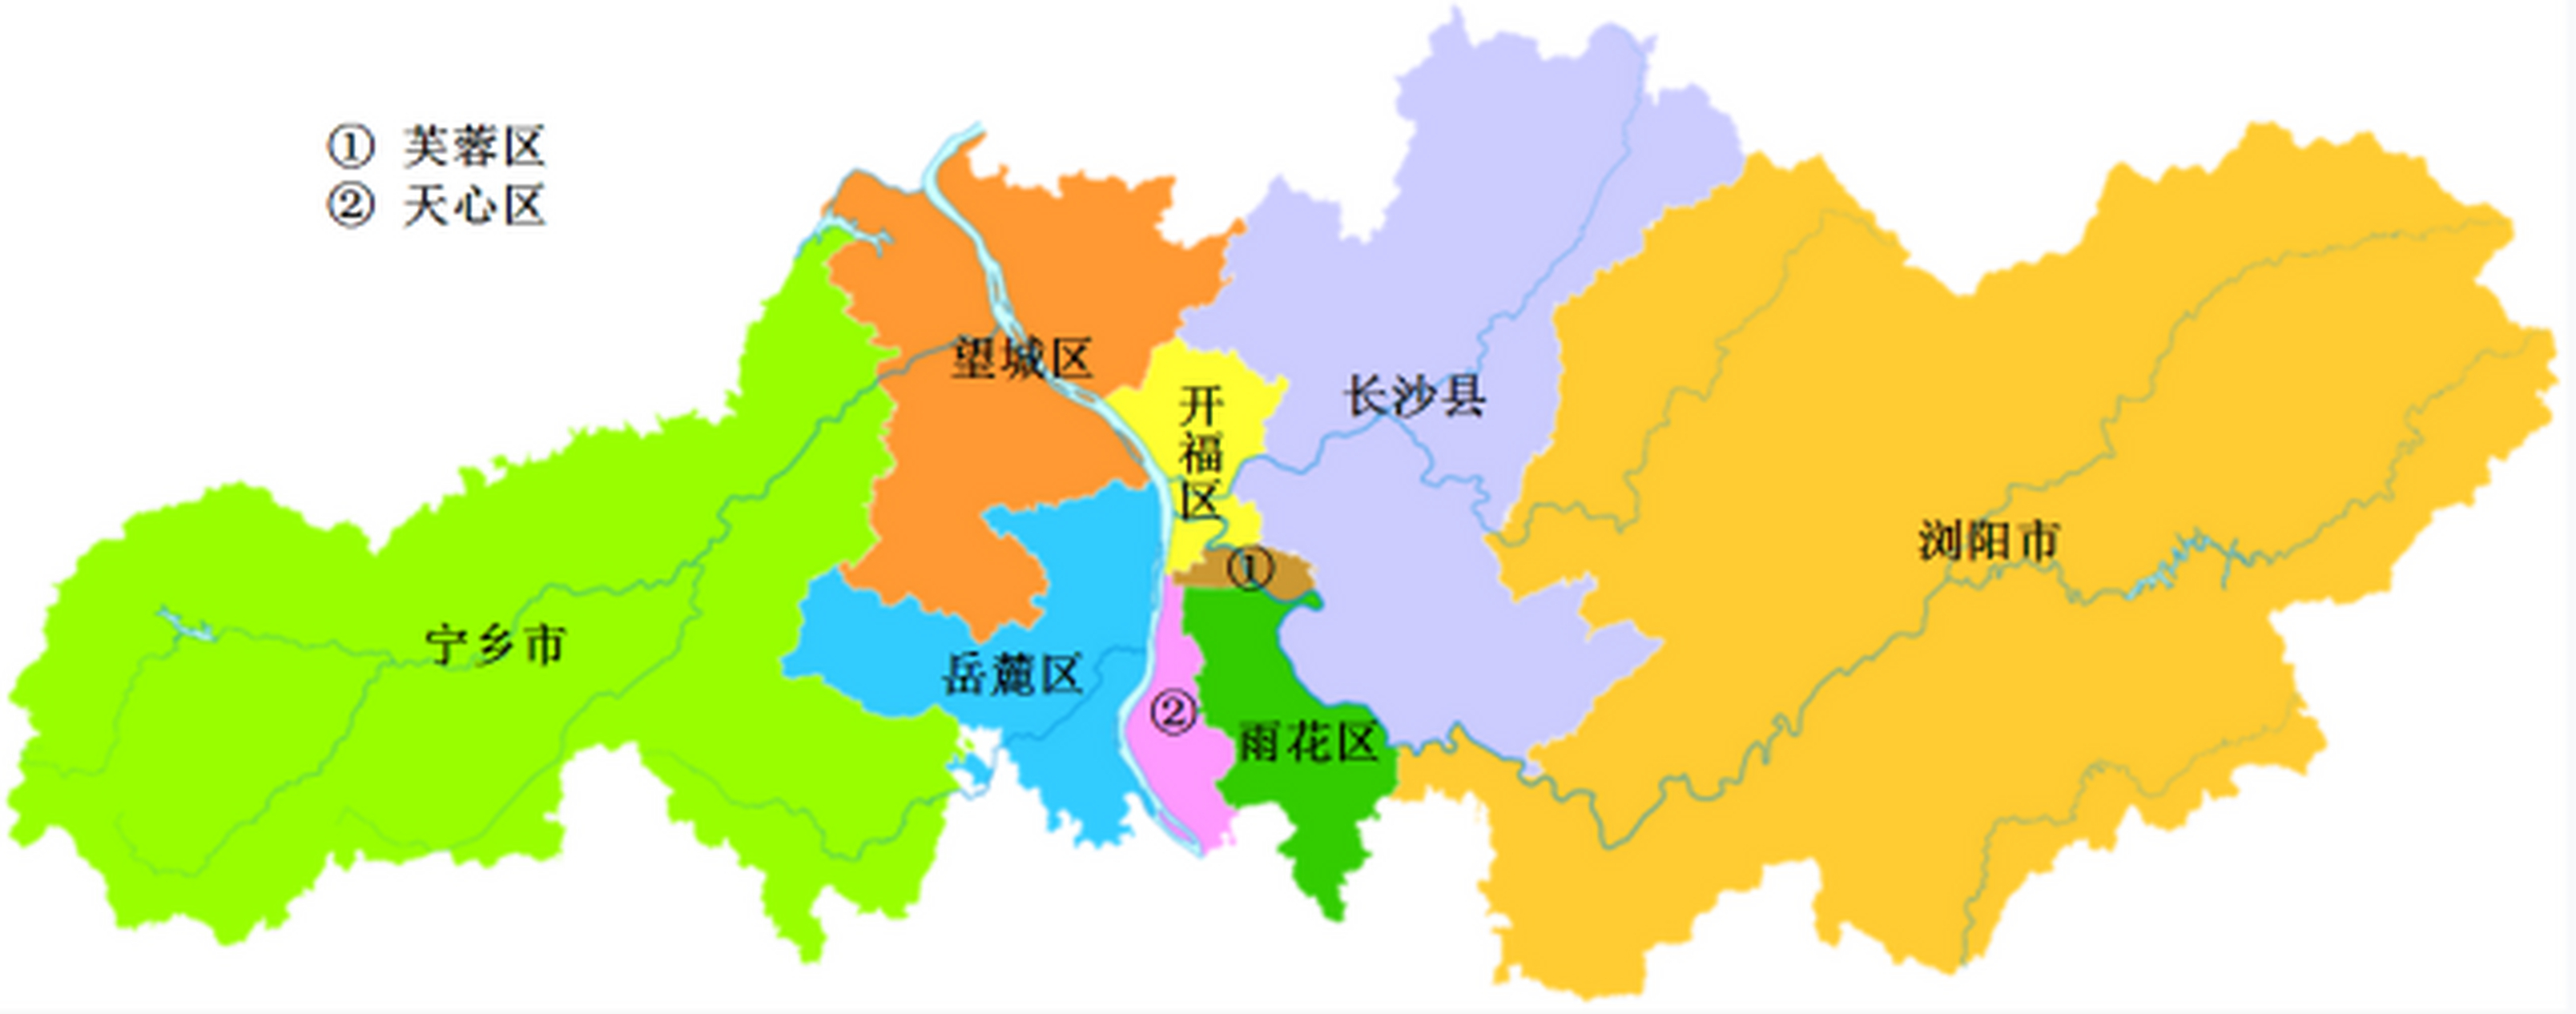 2亿 长沙县:1785亿 浏阳市:1493亿 岳麓区:1360亿 芙蓉区:1163.